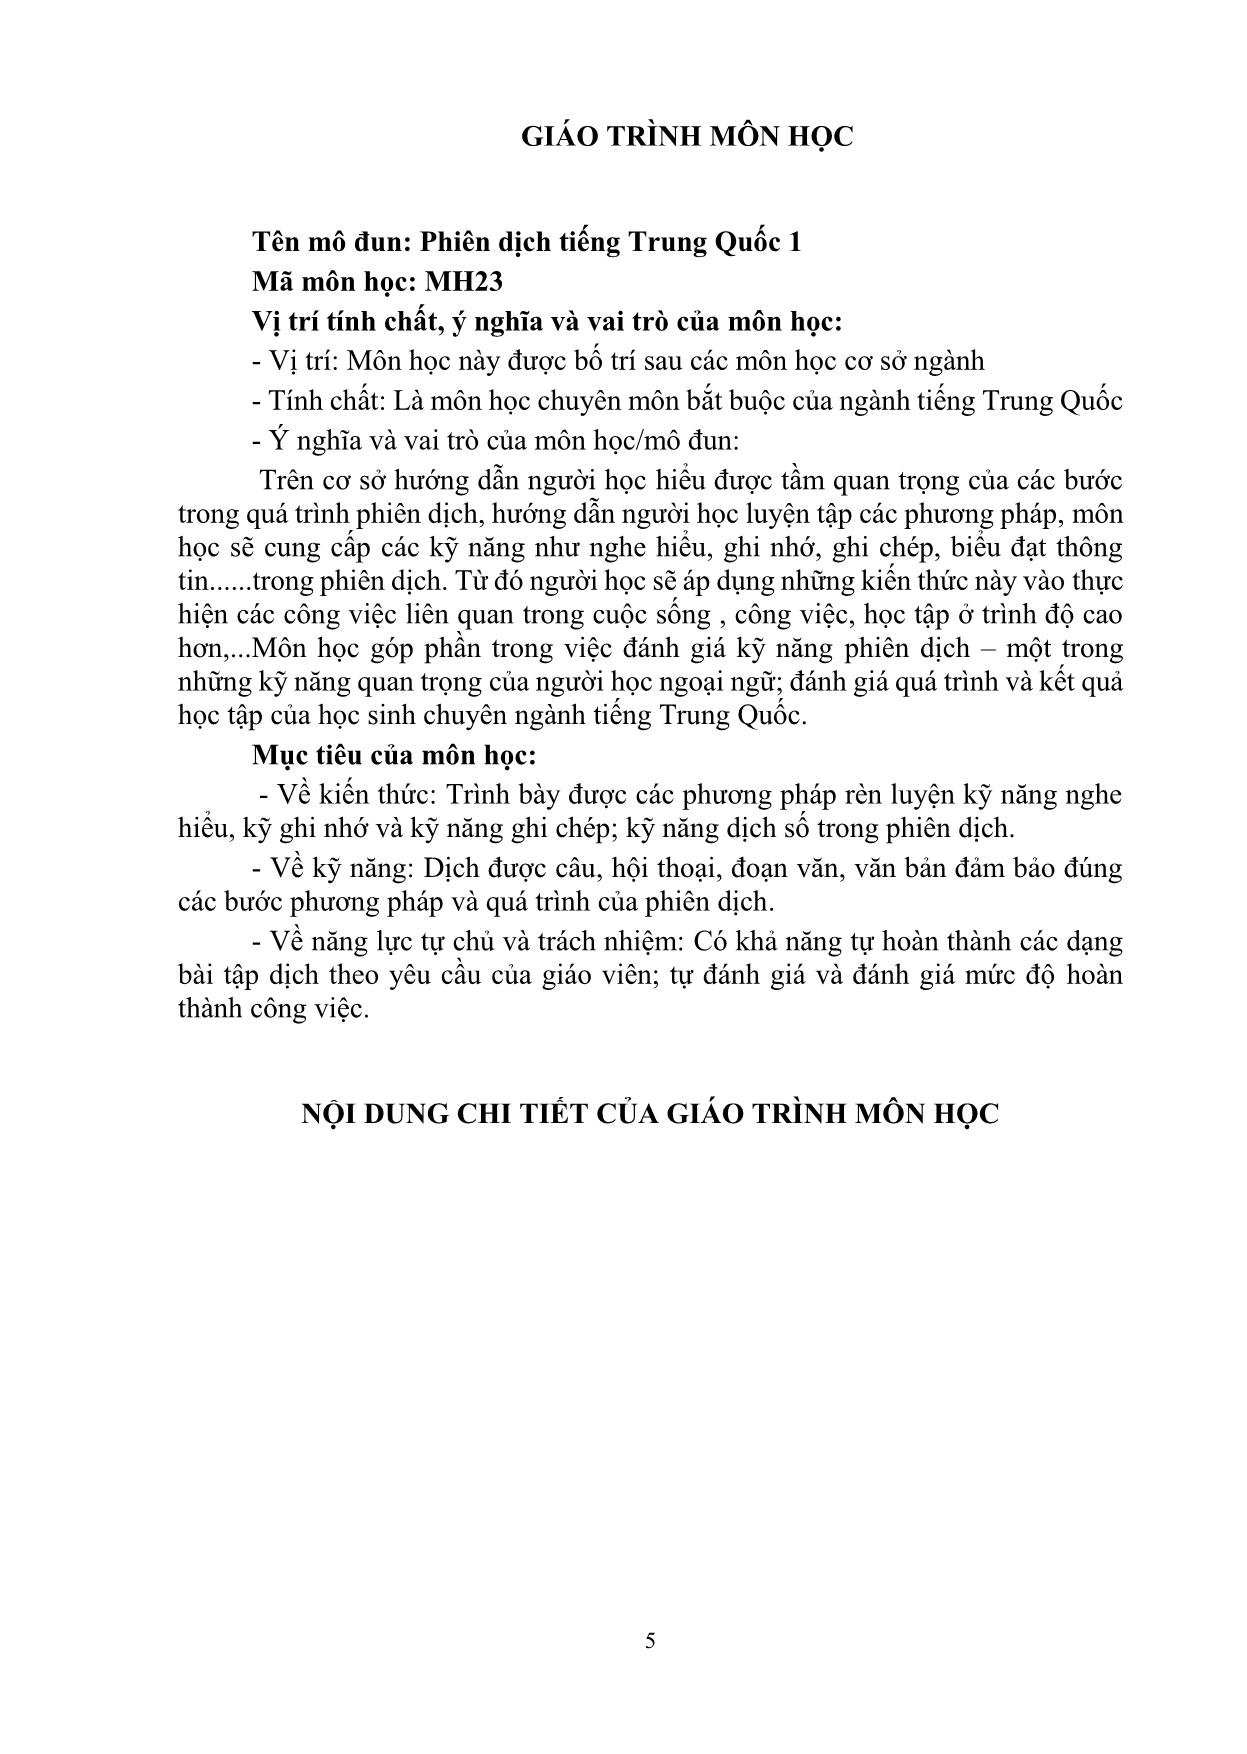 Giáo trình Phiên dịch tiếng Trung Quốc 1 trang 5